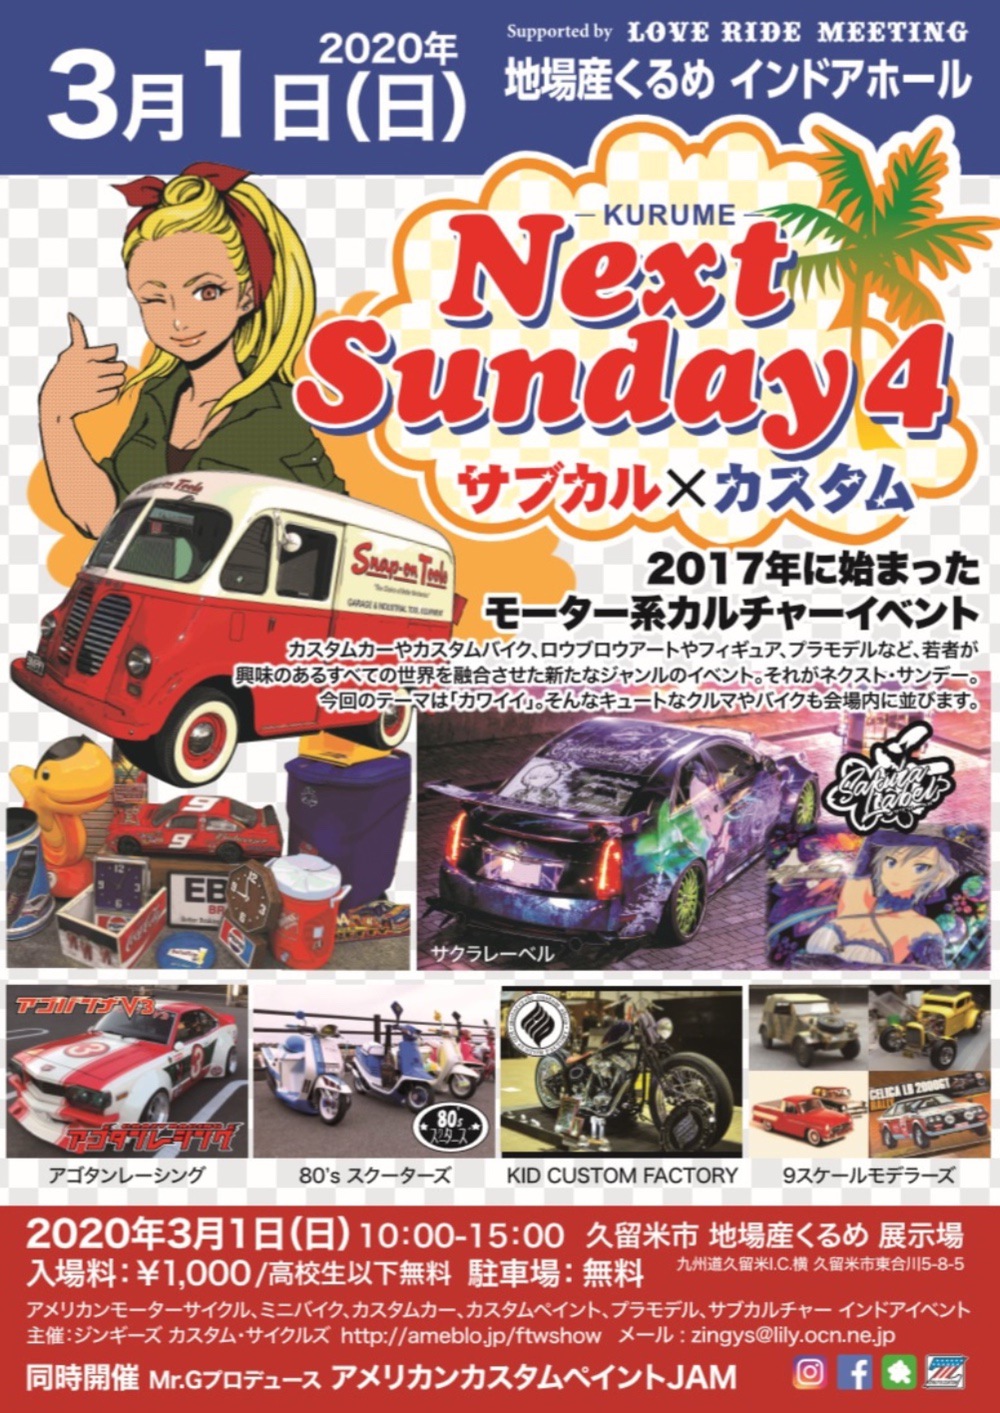 久留米 Next Sundsy 4 モーター系カルチャーイベント【2020】